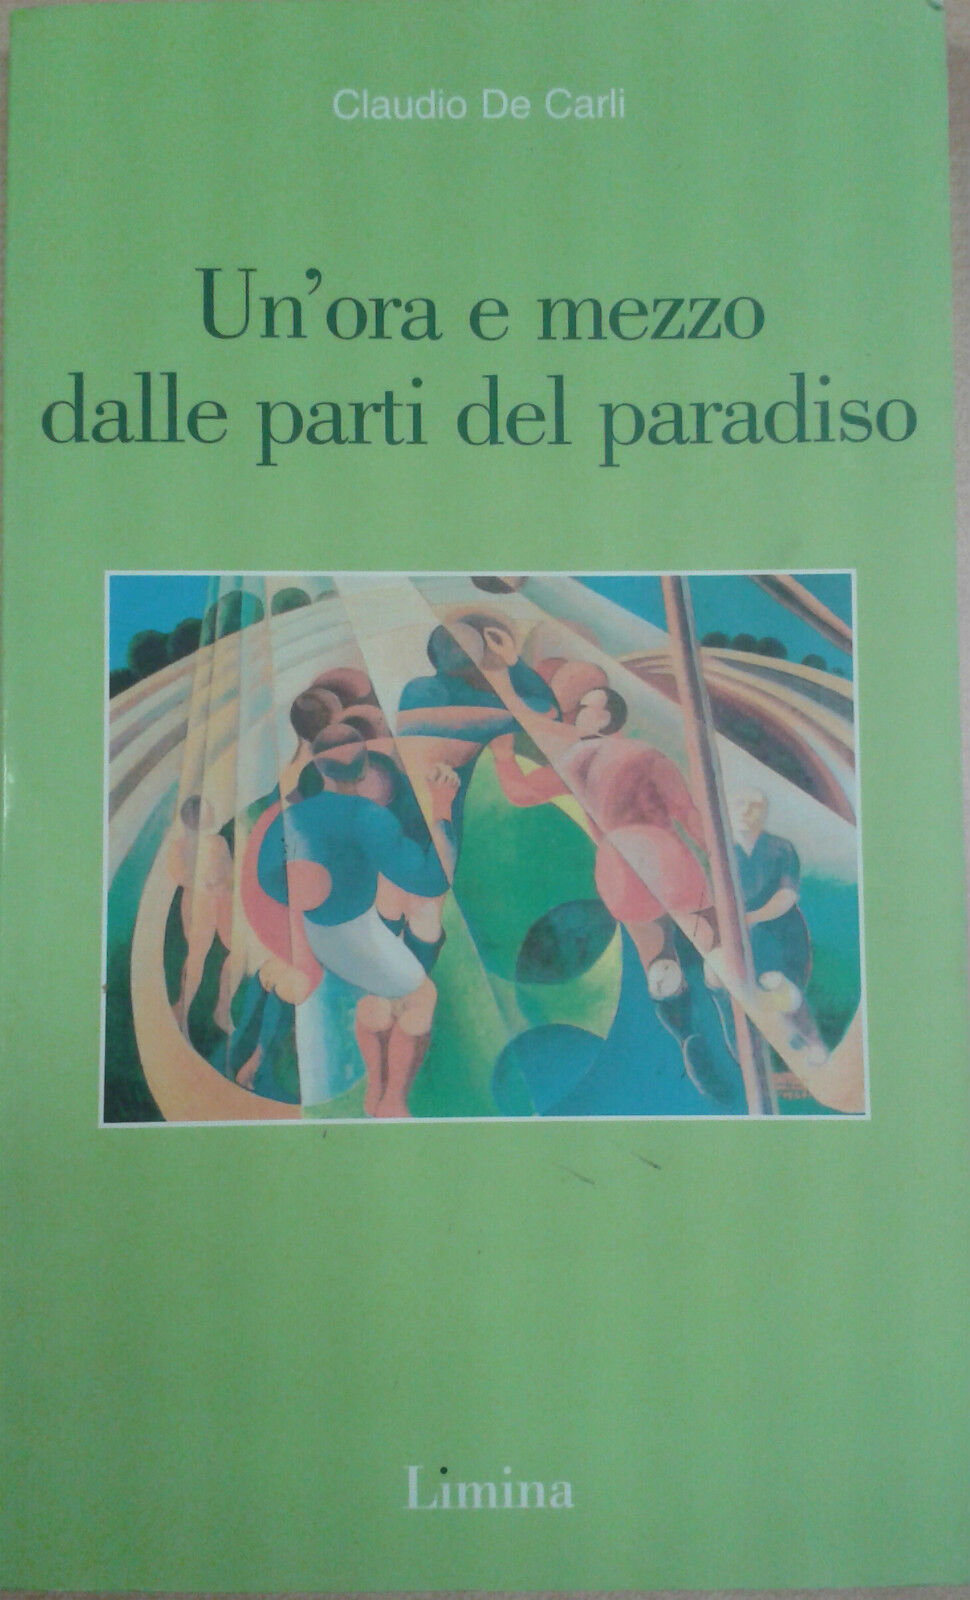 Claudio De Carli - Un'ora e mezzo dalle parti del paradiso - Limina - 2004 - M